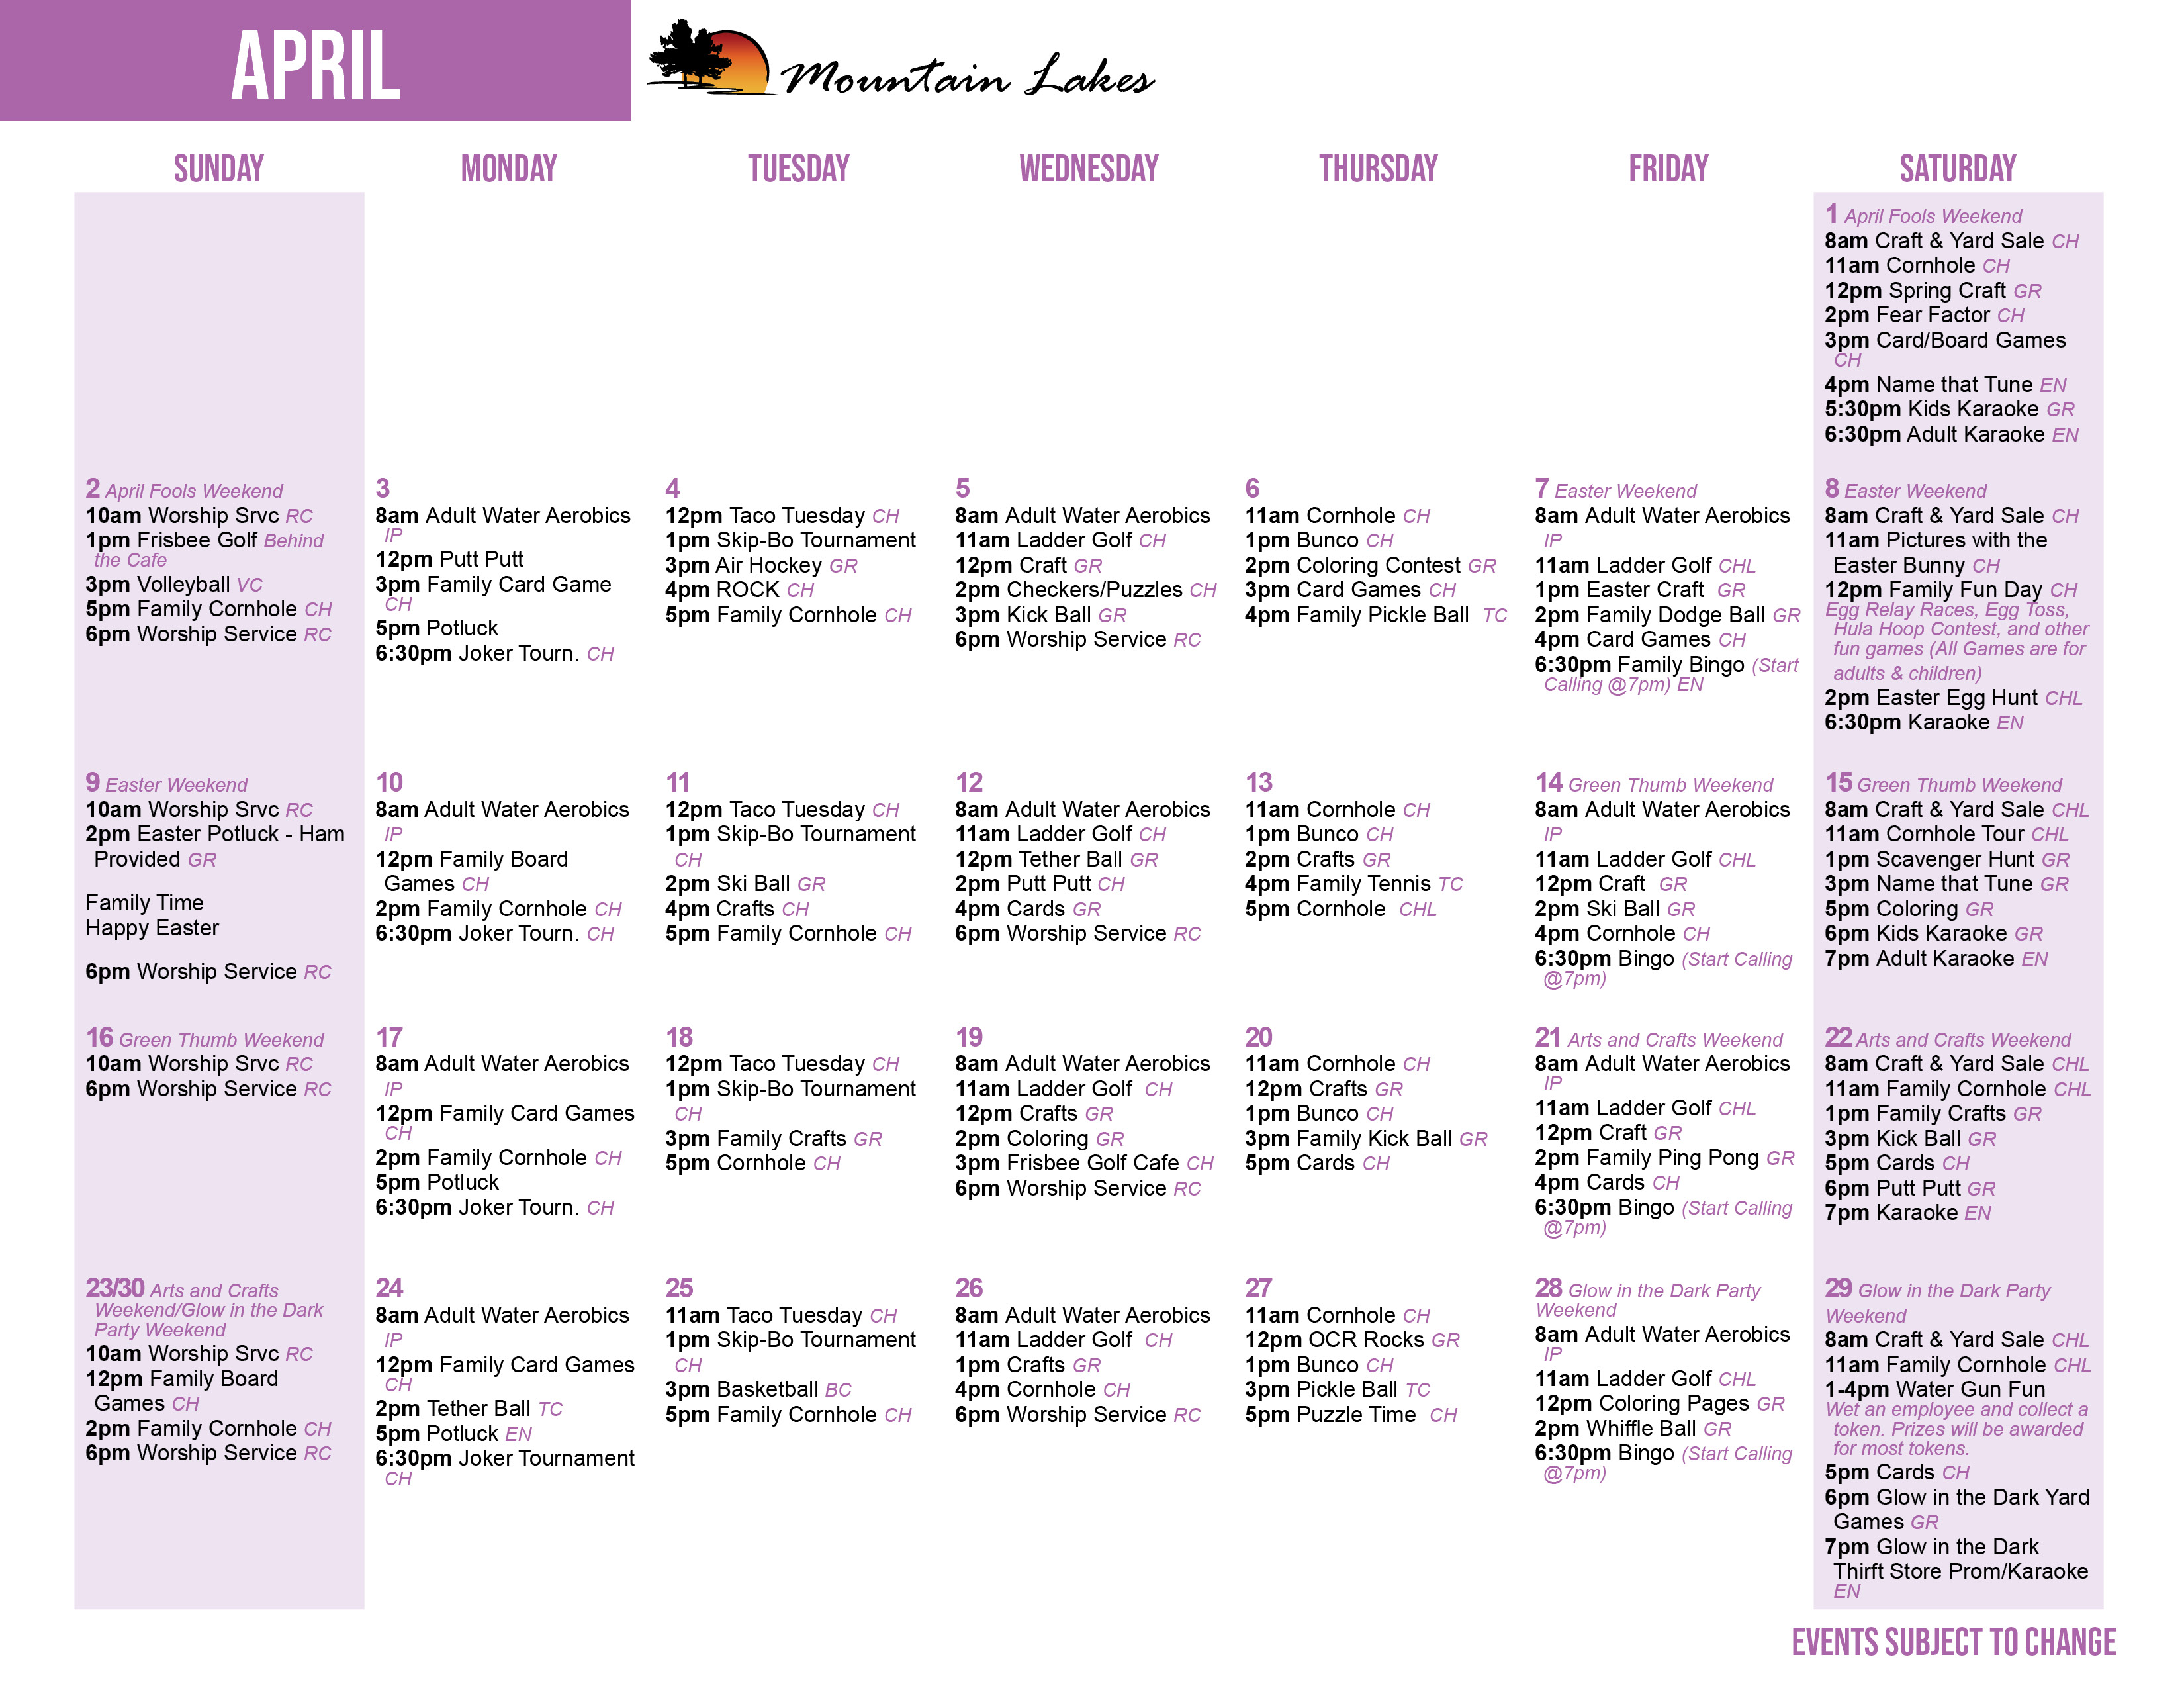 Mountain Lakes April's Activity Calendar